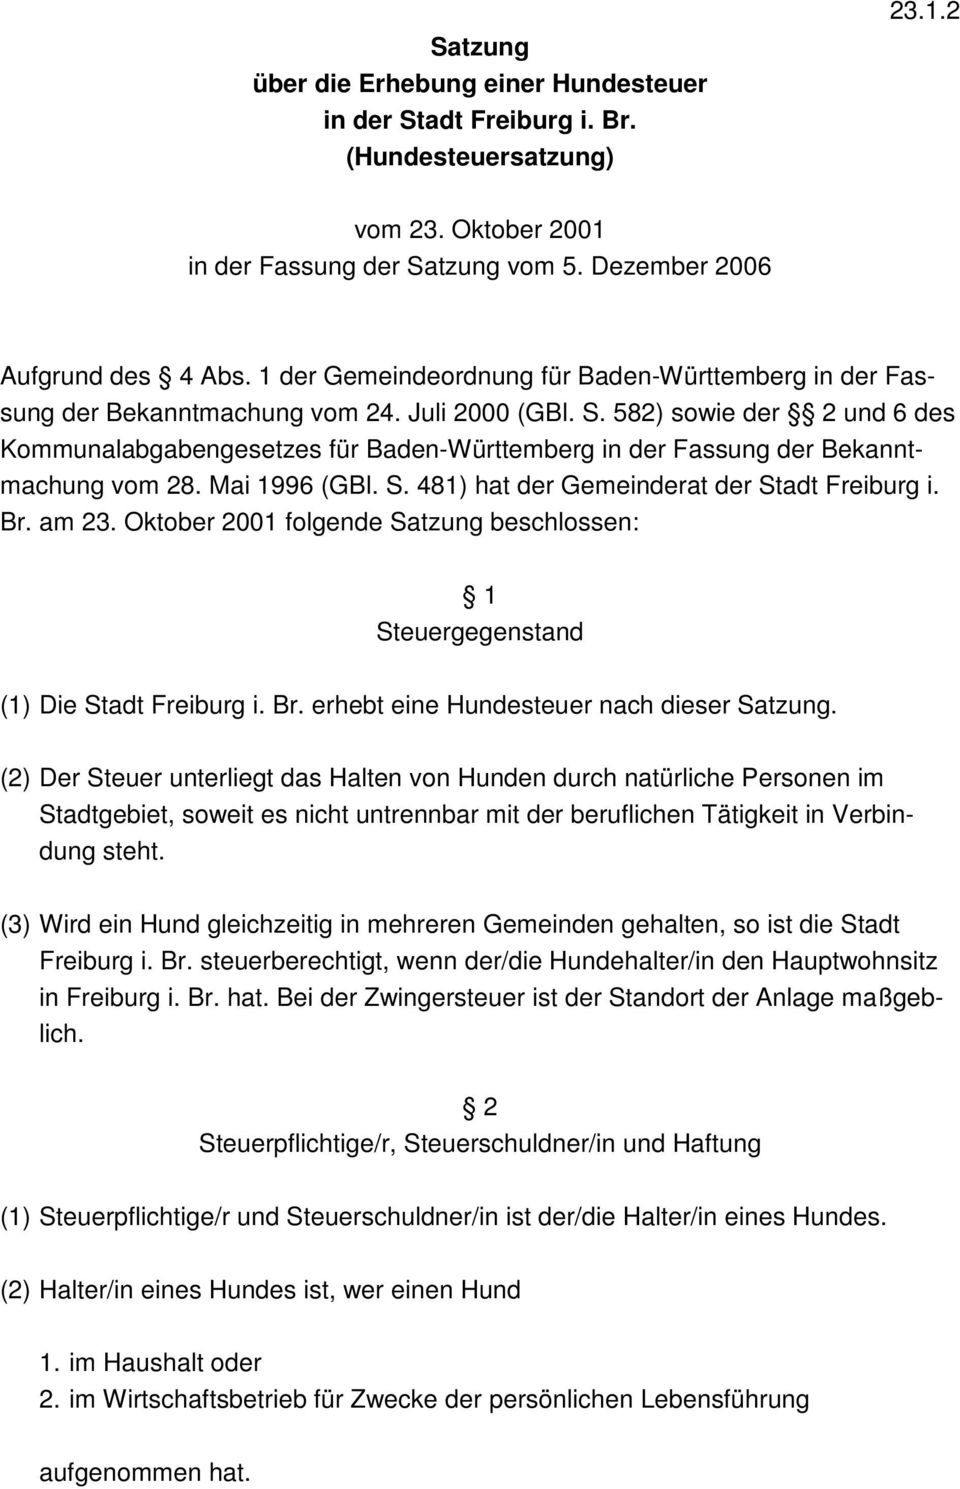 582) sowie der 2 und 6 des Kommunalabgabengesetzes für Baden-Württemberg in der Fassung der Bekanntmachung vom 28. Mai 1996 (GBl. S. 481) hat der Gemeinderat der Stadt Freiburg i. Br. am 23.